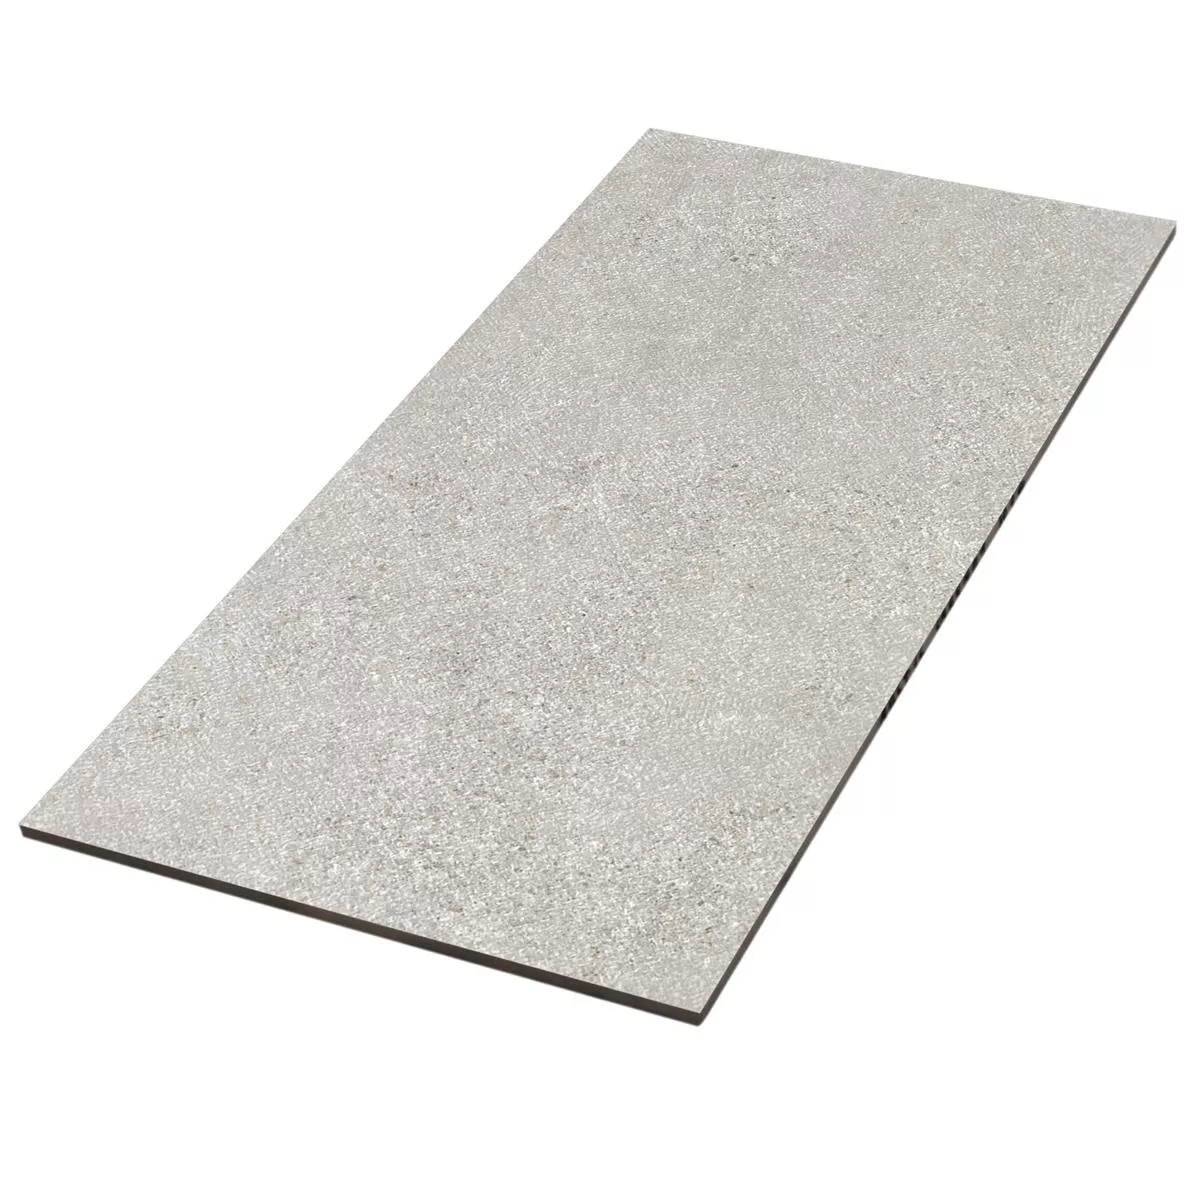 Sample Floor Tiles Galilea Unglazed R10B Grey 30x60cm